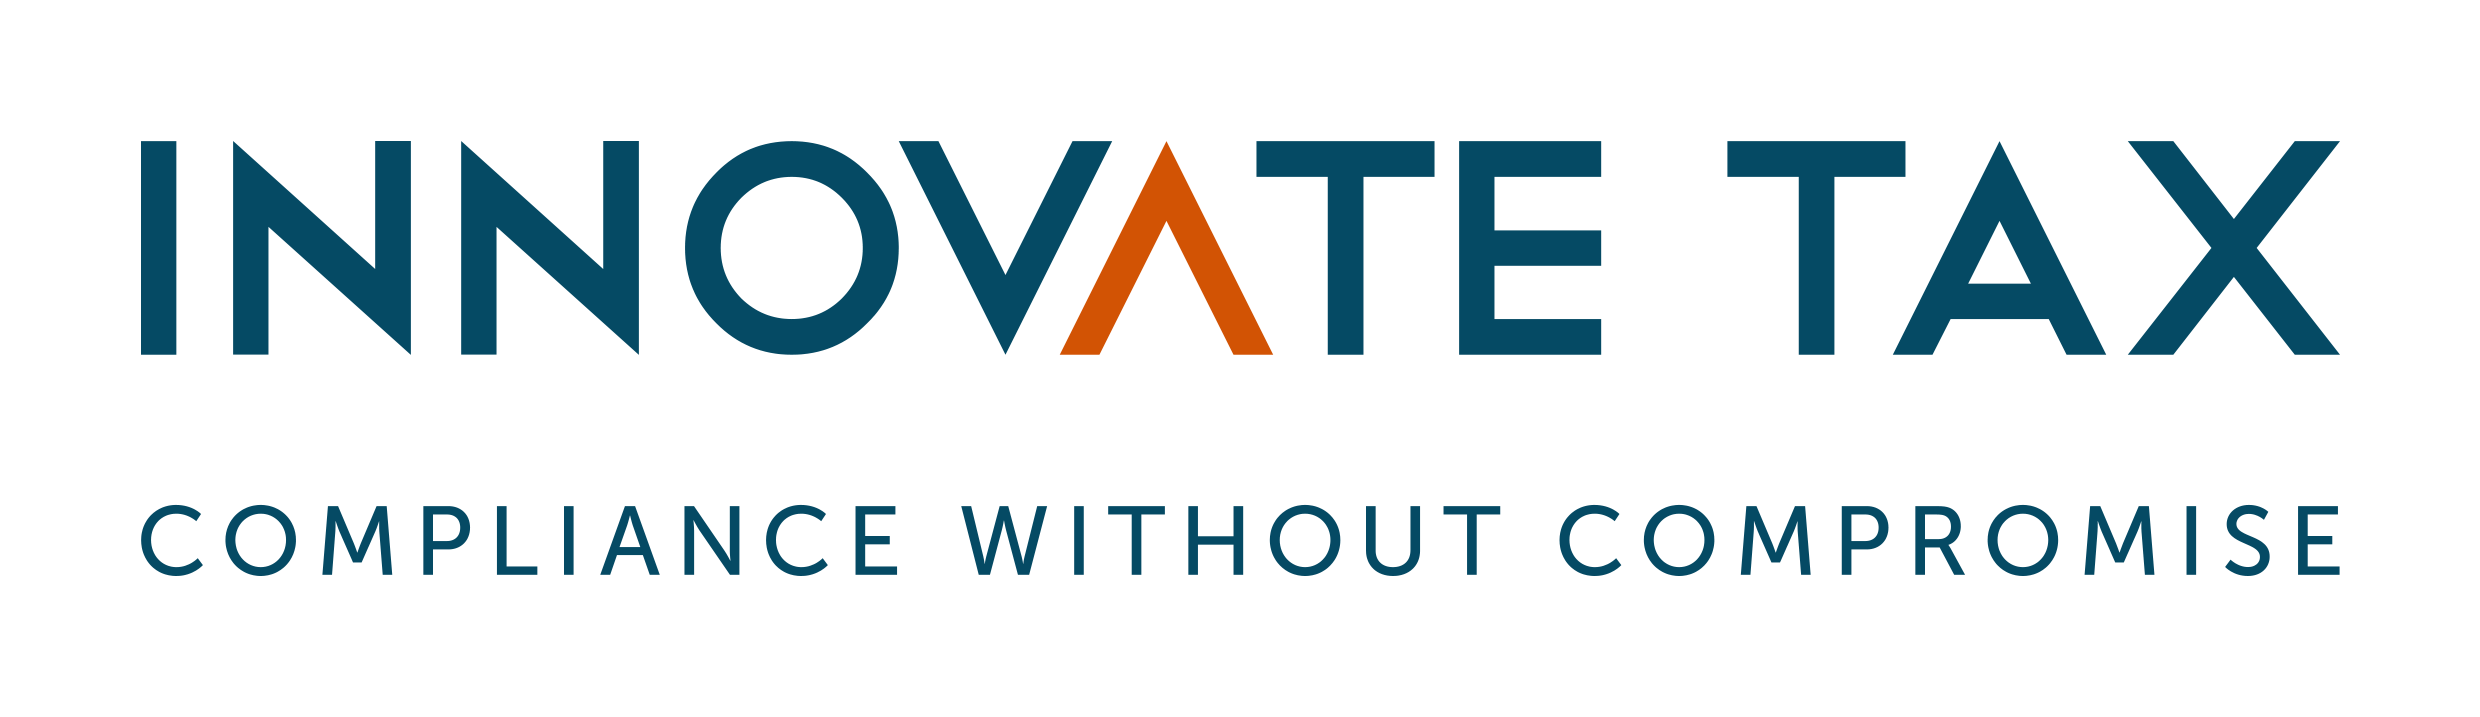 Innovate Tax Logo